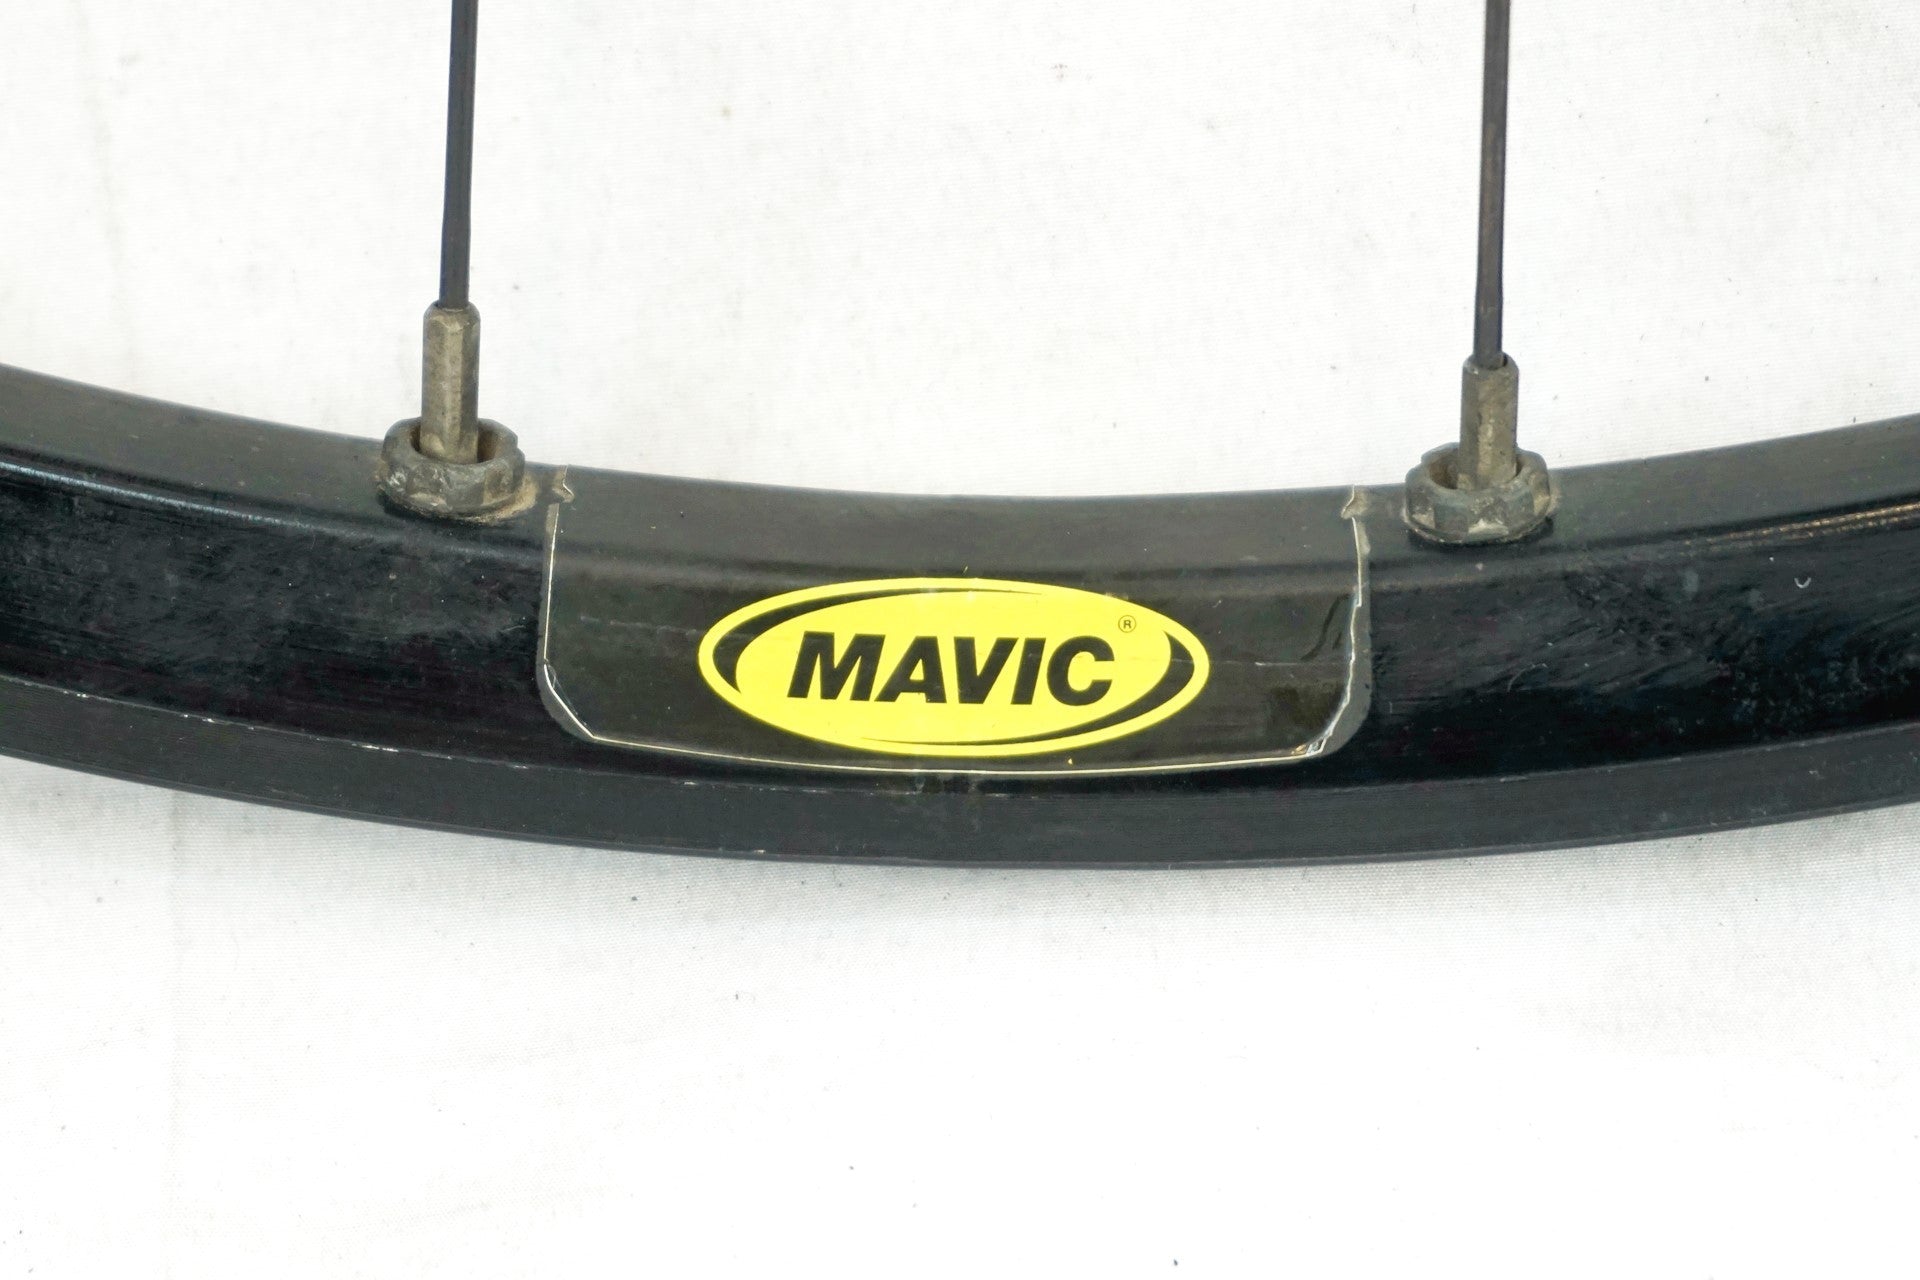 MAVIC 「マビック」 CROSS ROC シマノ 10S 26インチ ホイールセット / 有明ガーデン店